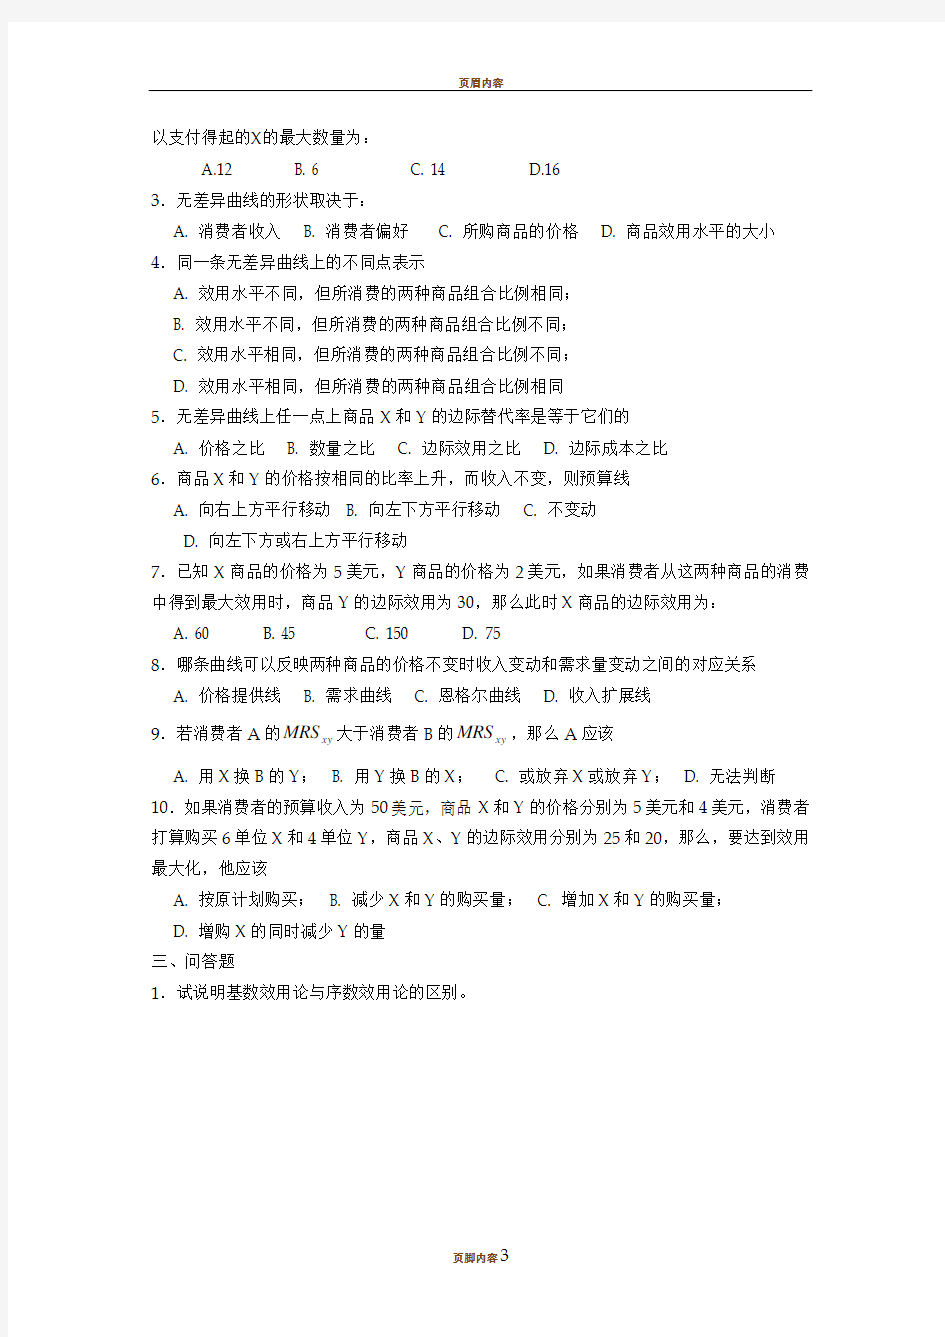 上海财经大学 微观经济学 第一次作业